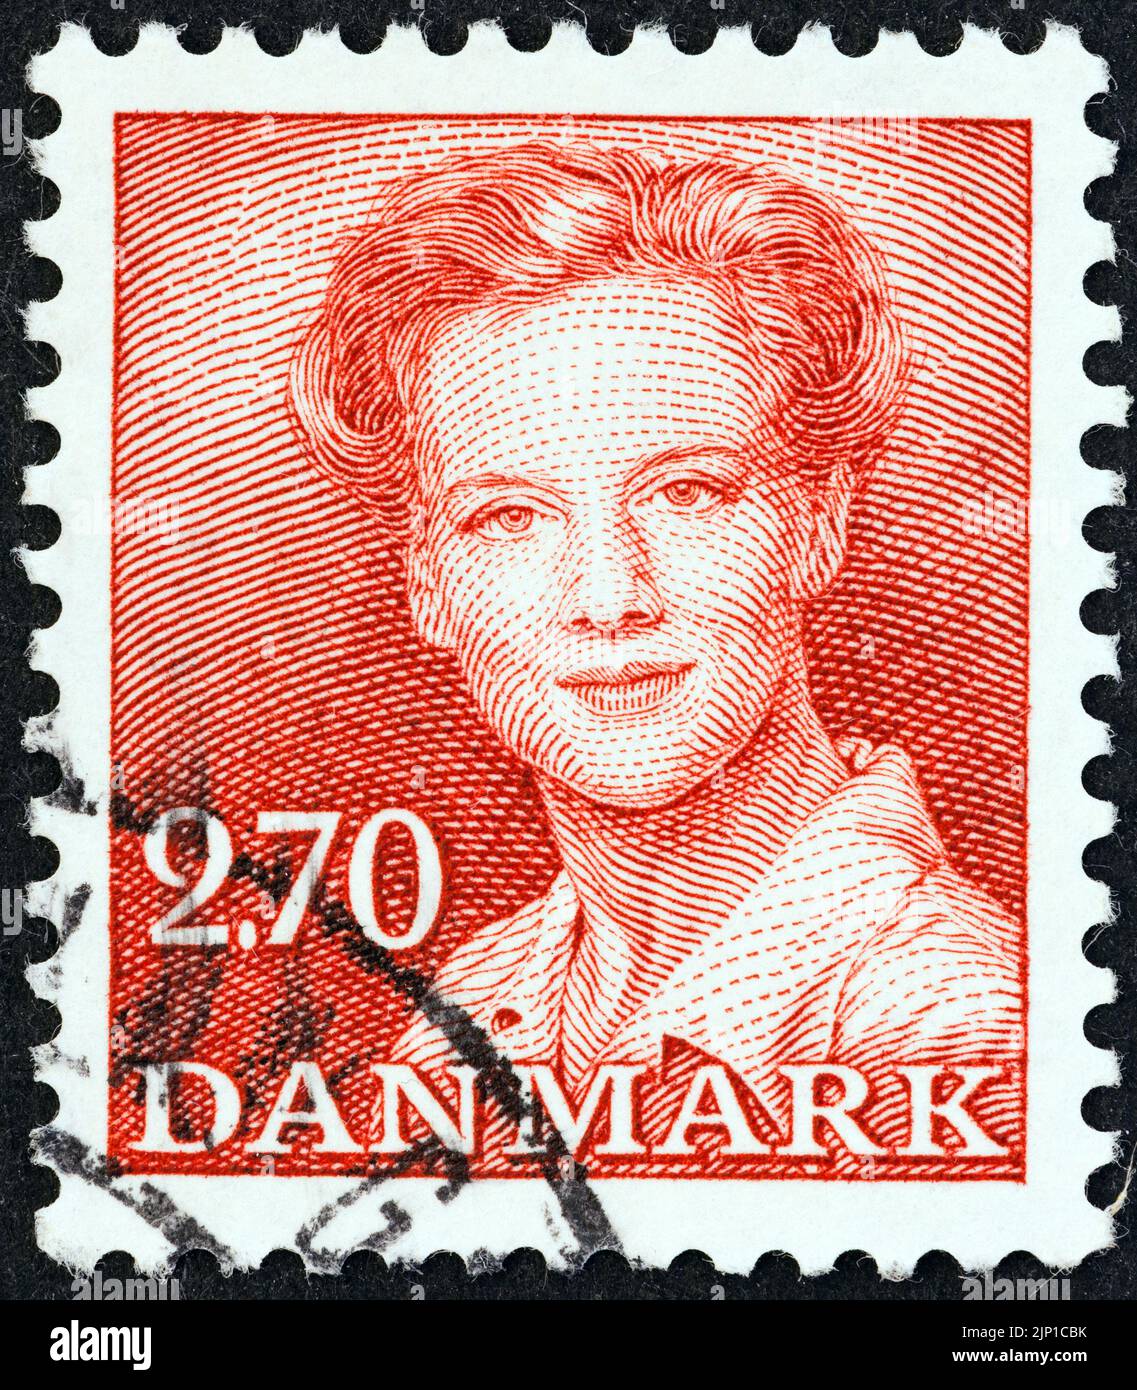 DENMARK - CIRCA 1982: A stamp printed in Denmark shows Queen Margrethe II, circa 1982. Stock Photo